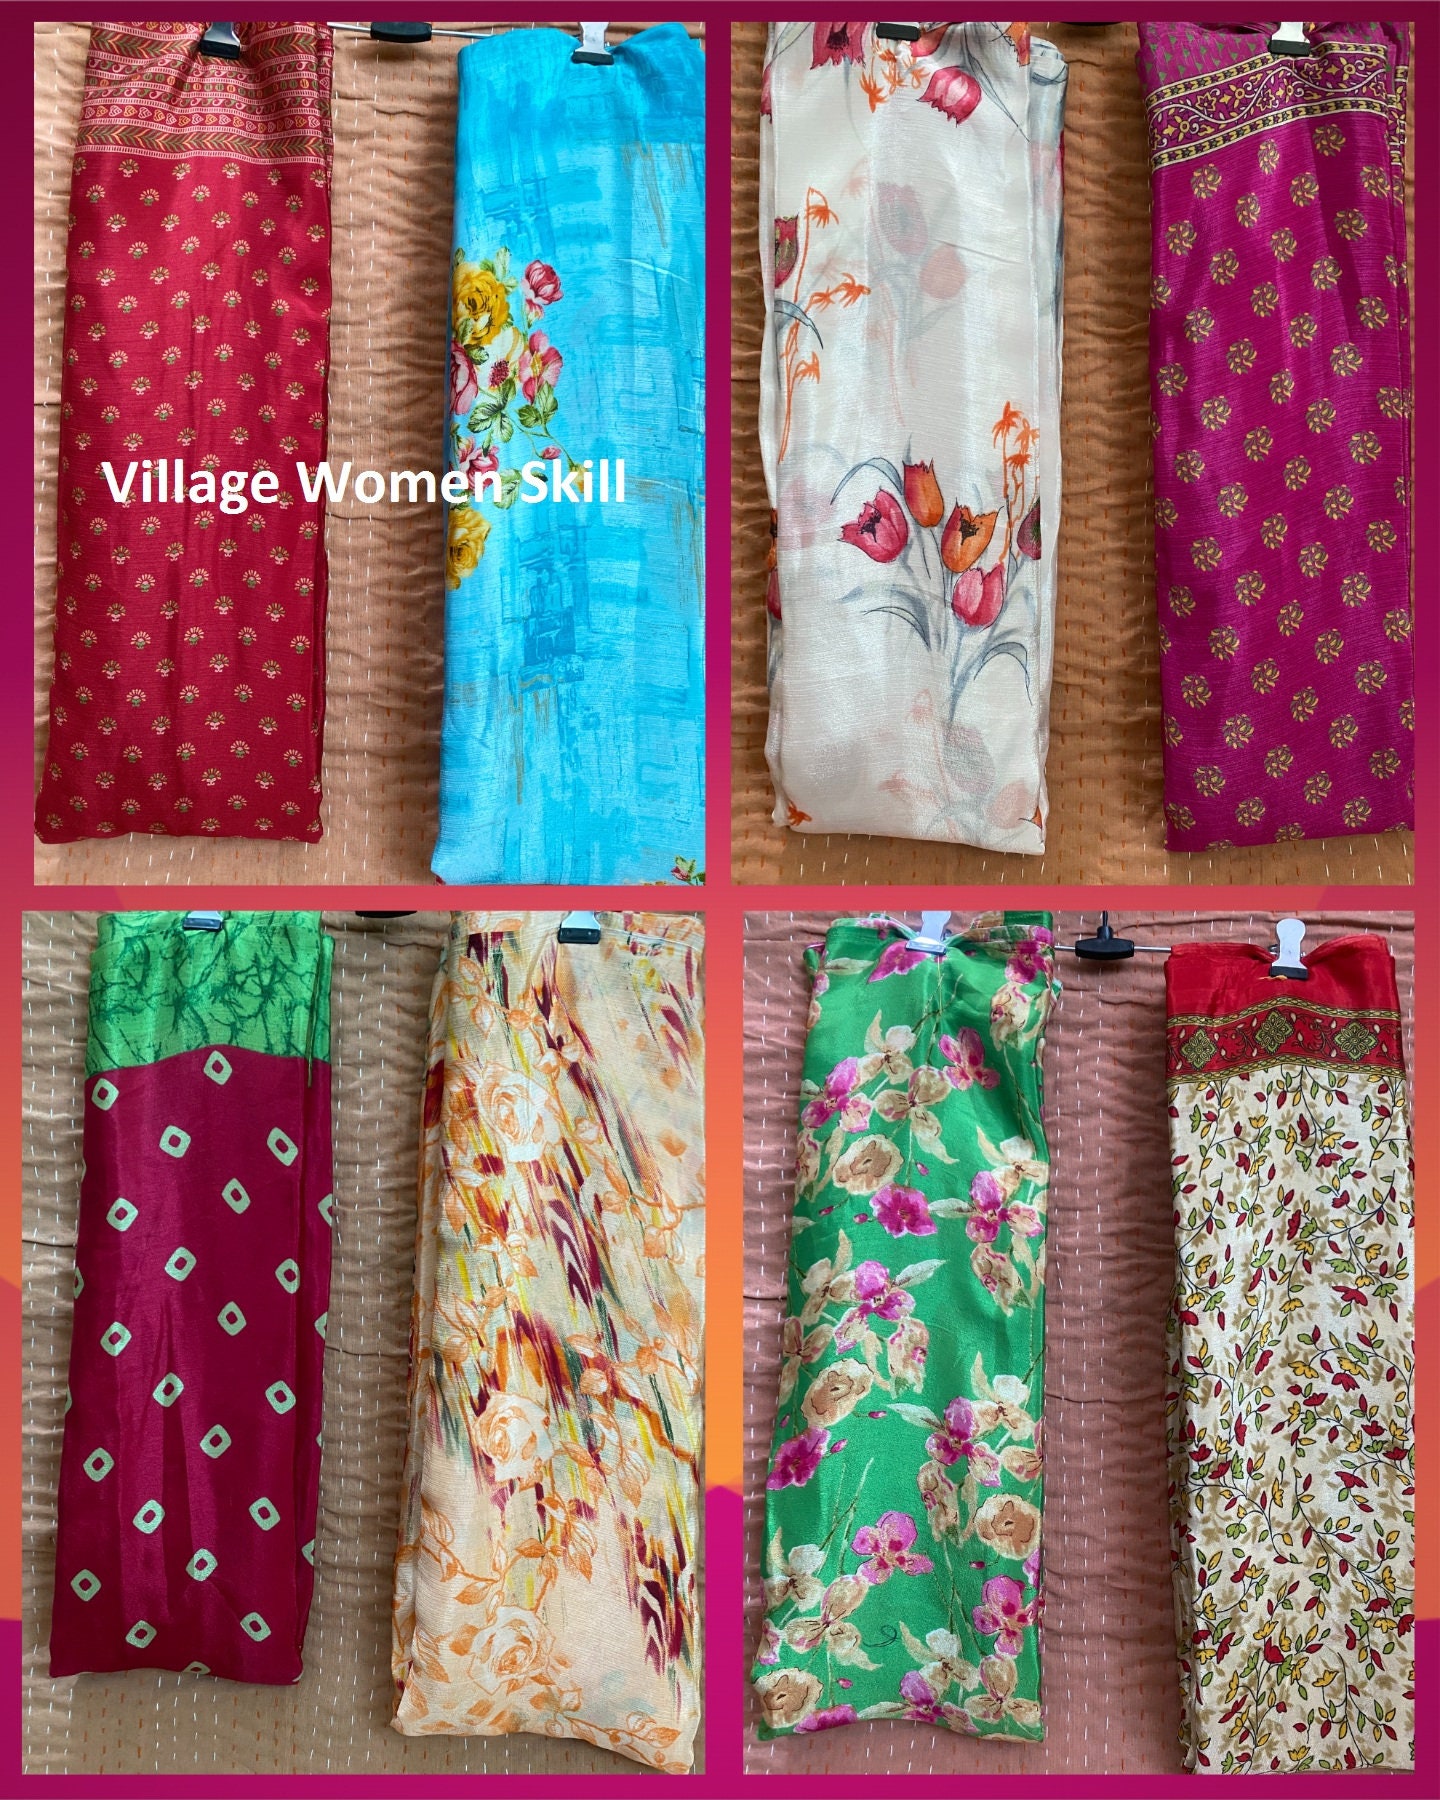 Recycled Sari Fabric